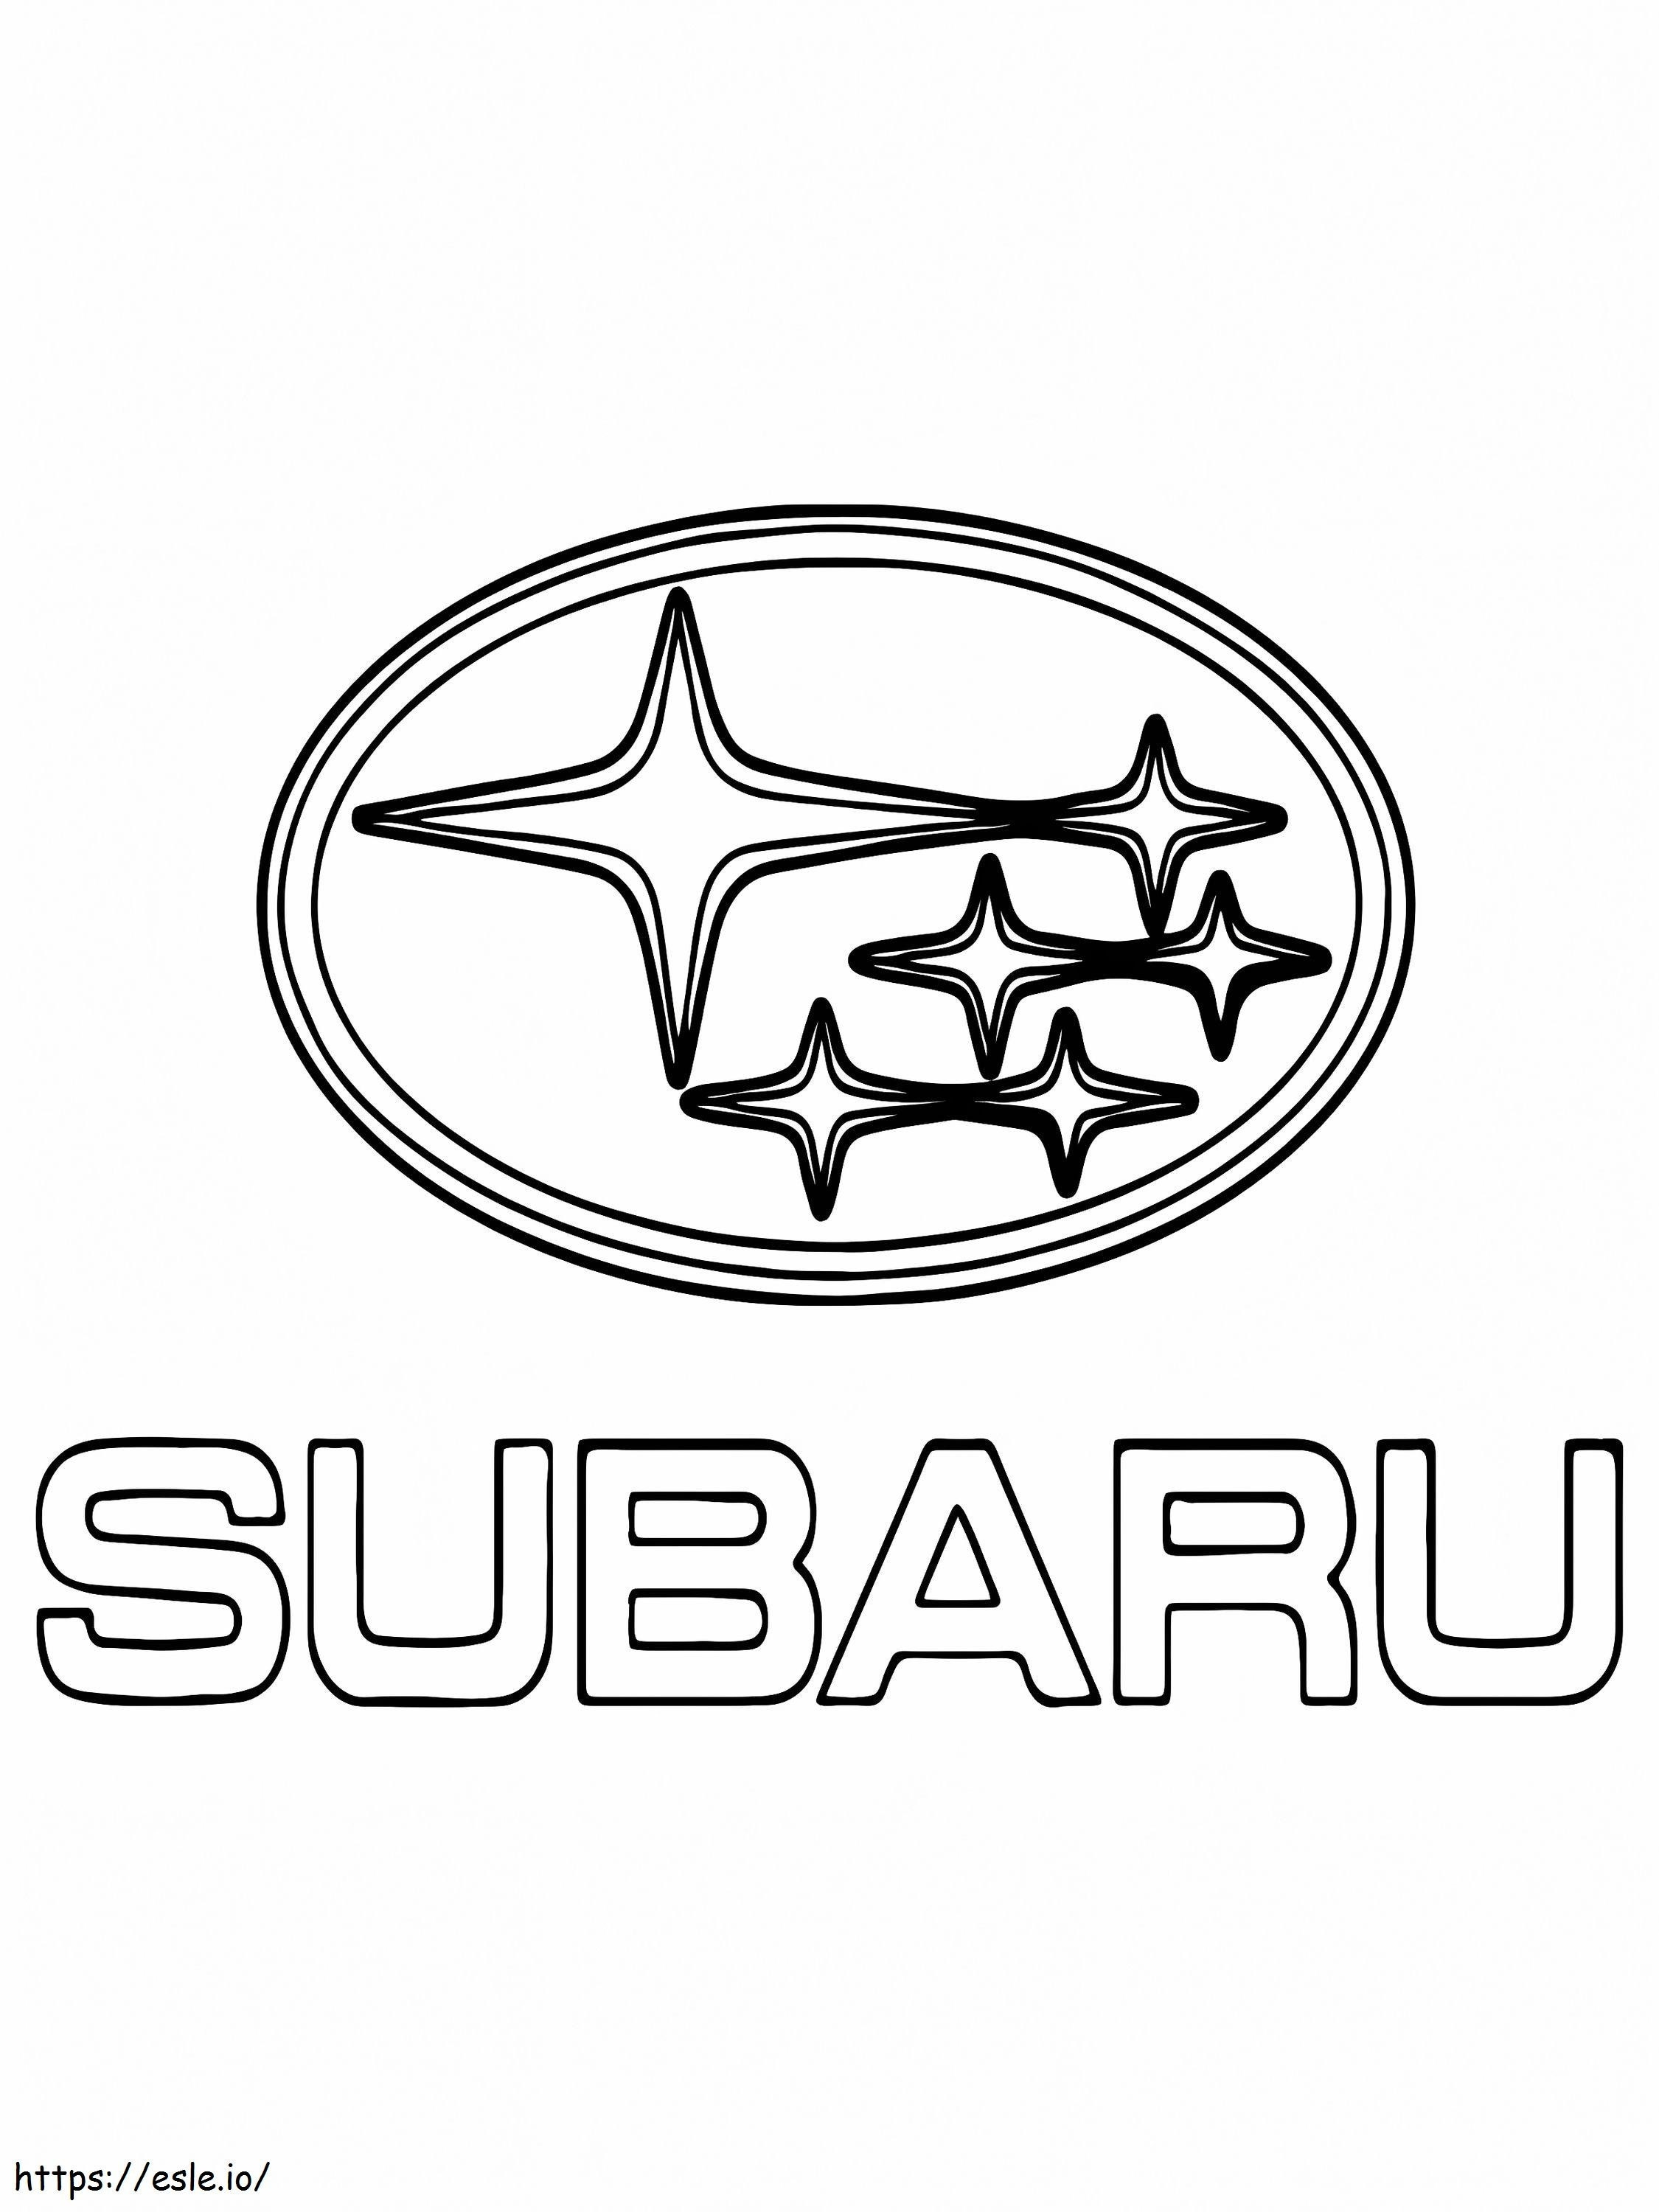 Logo dell'auto Subaru da colorare